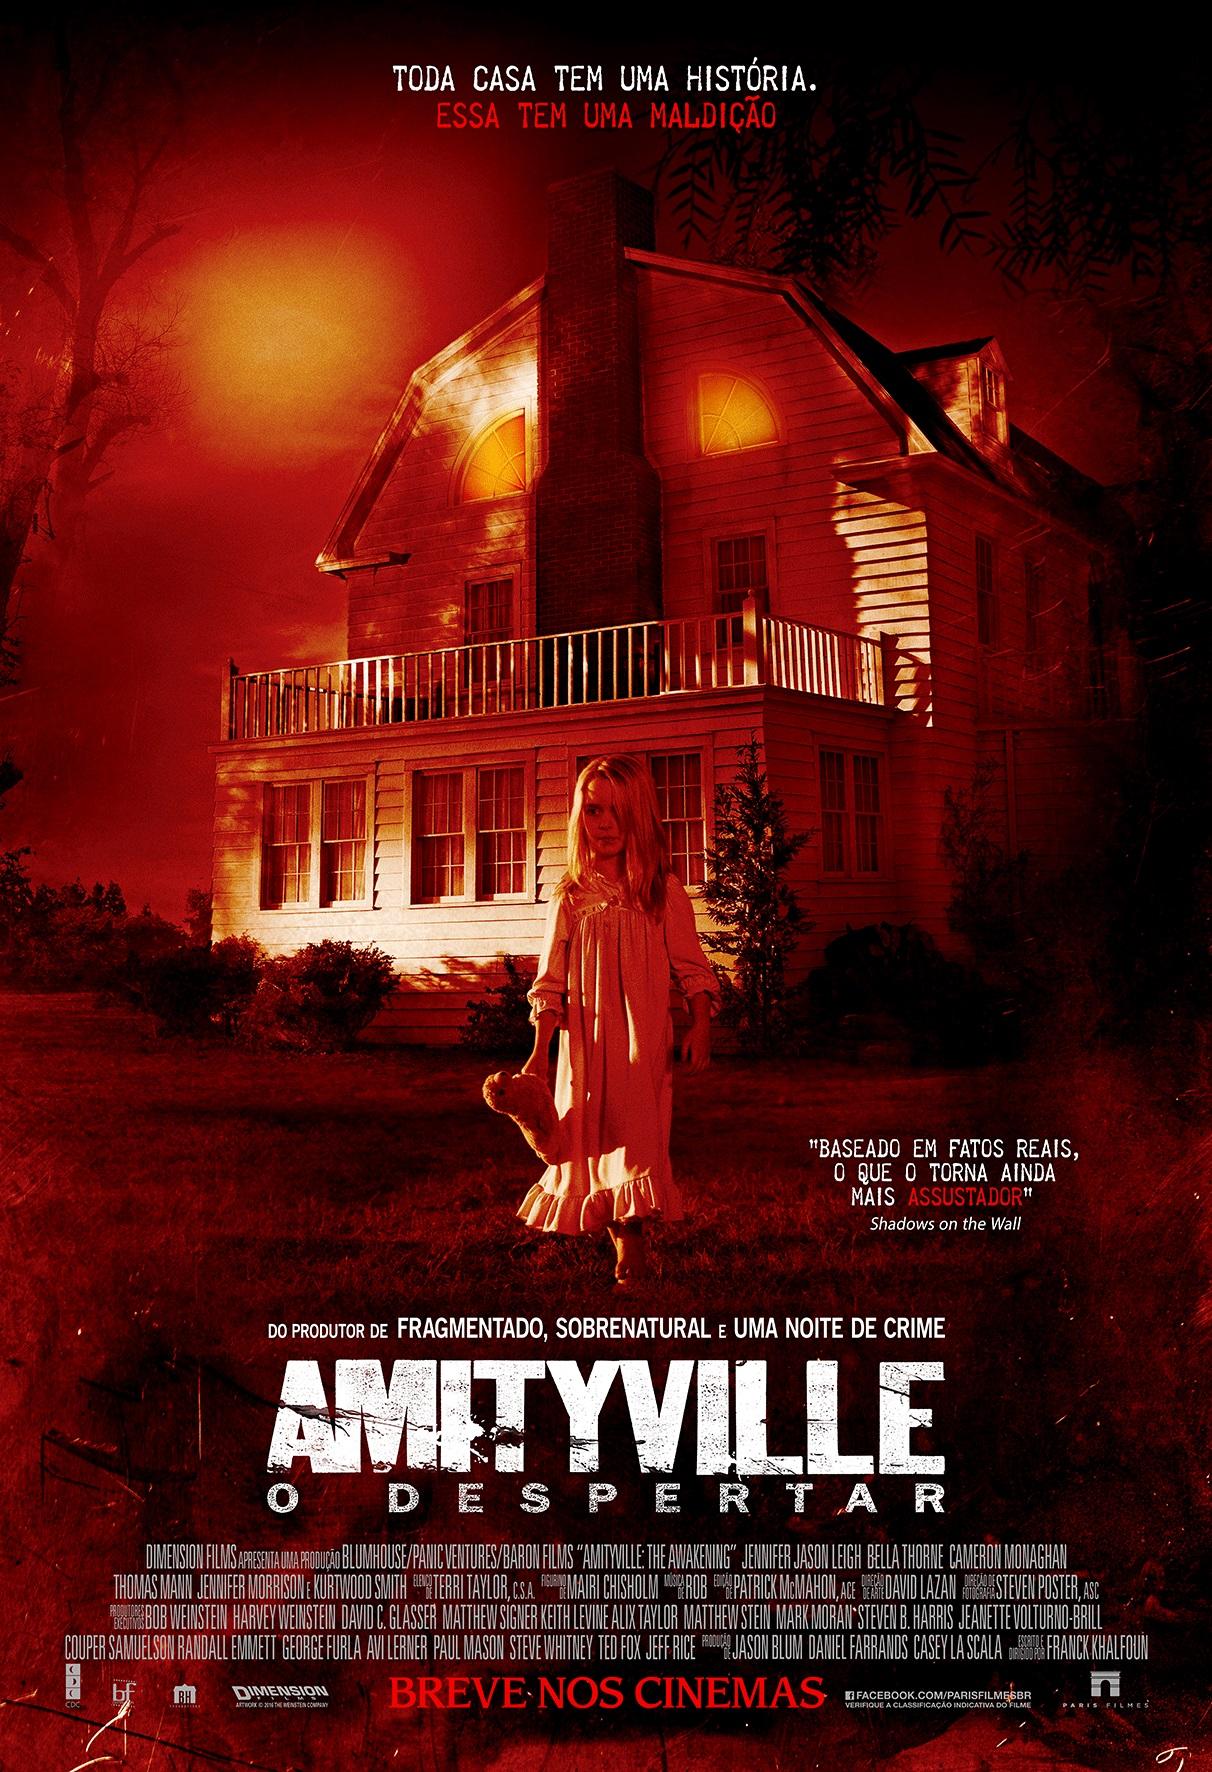 Постер фильма Ужас Амитивилля: Пробуждение | Amityville: The Awakening